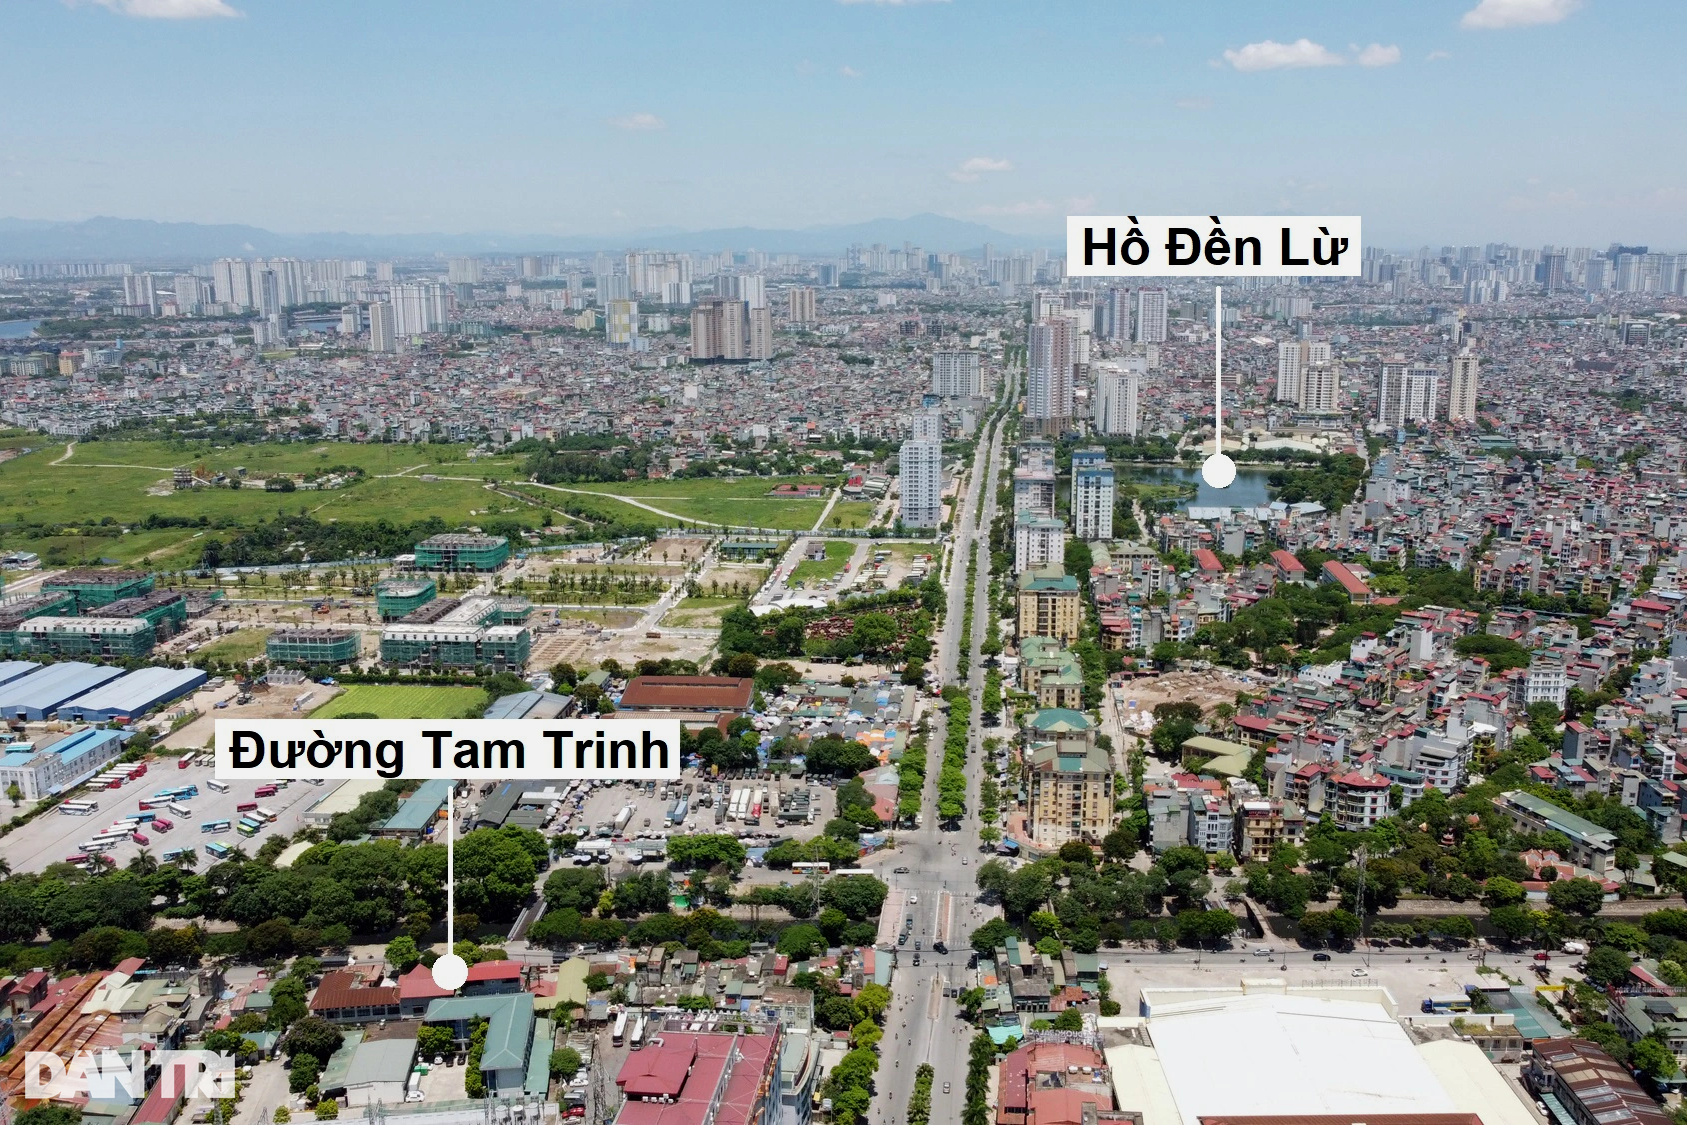 Toàn cảnh đường vành đai 2,5 đi qua nhiều khu đô thị ở Hà Nội - 17